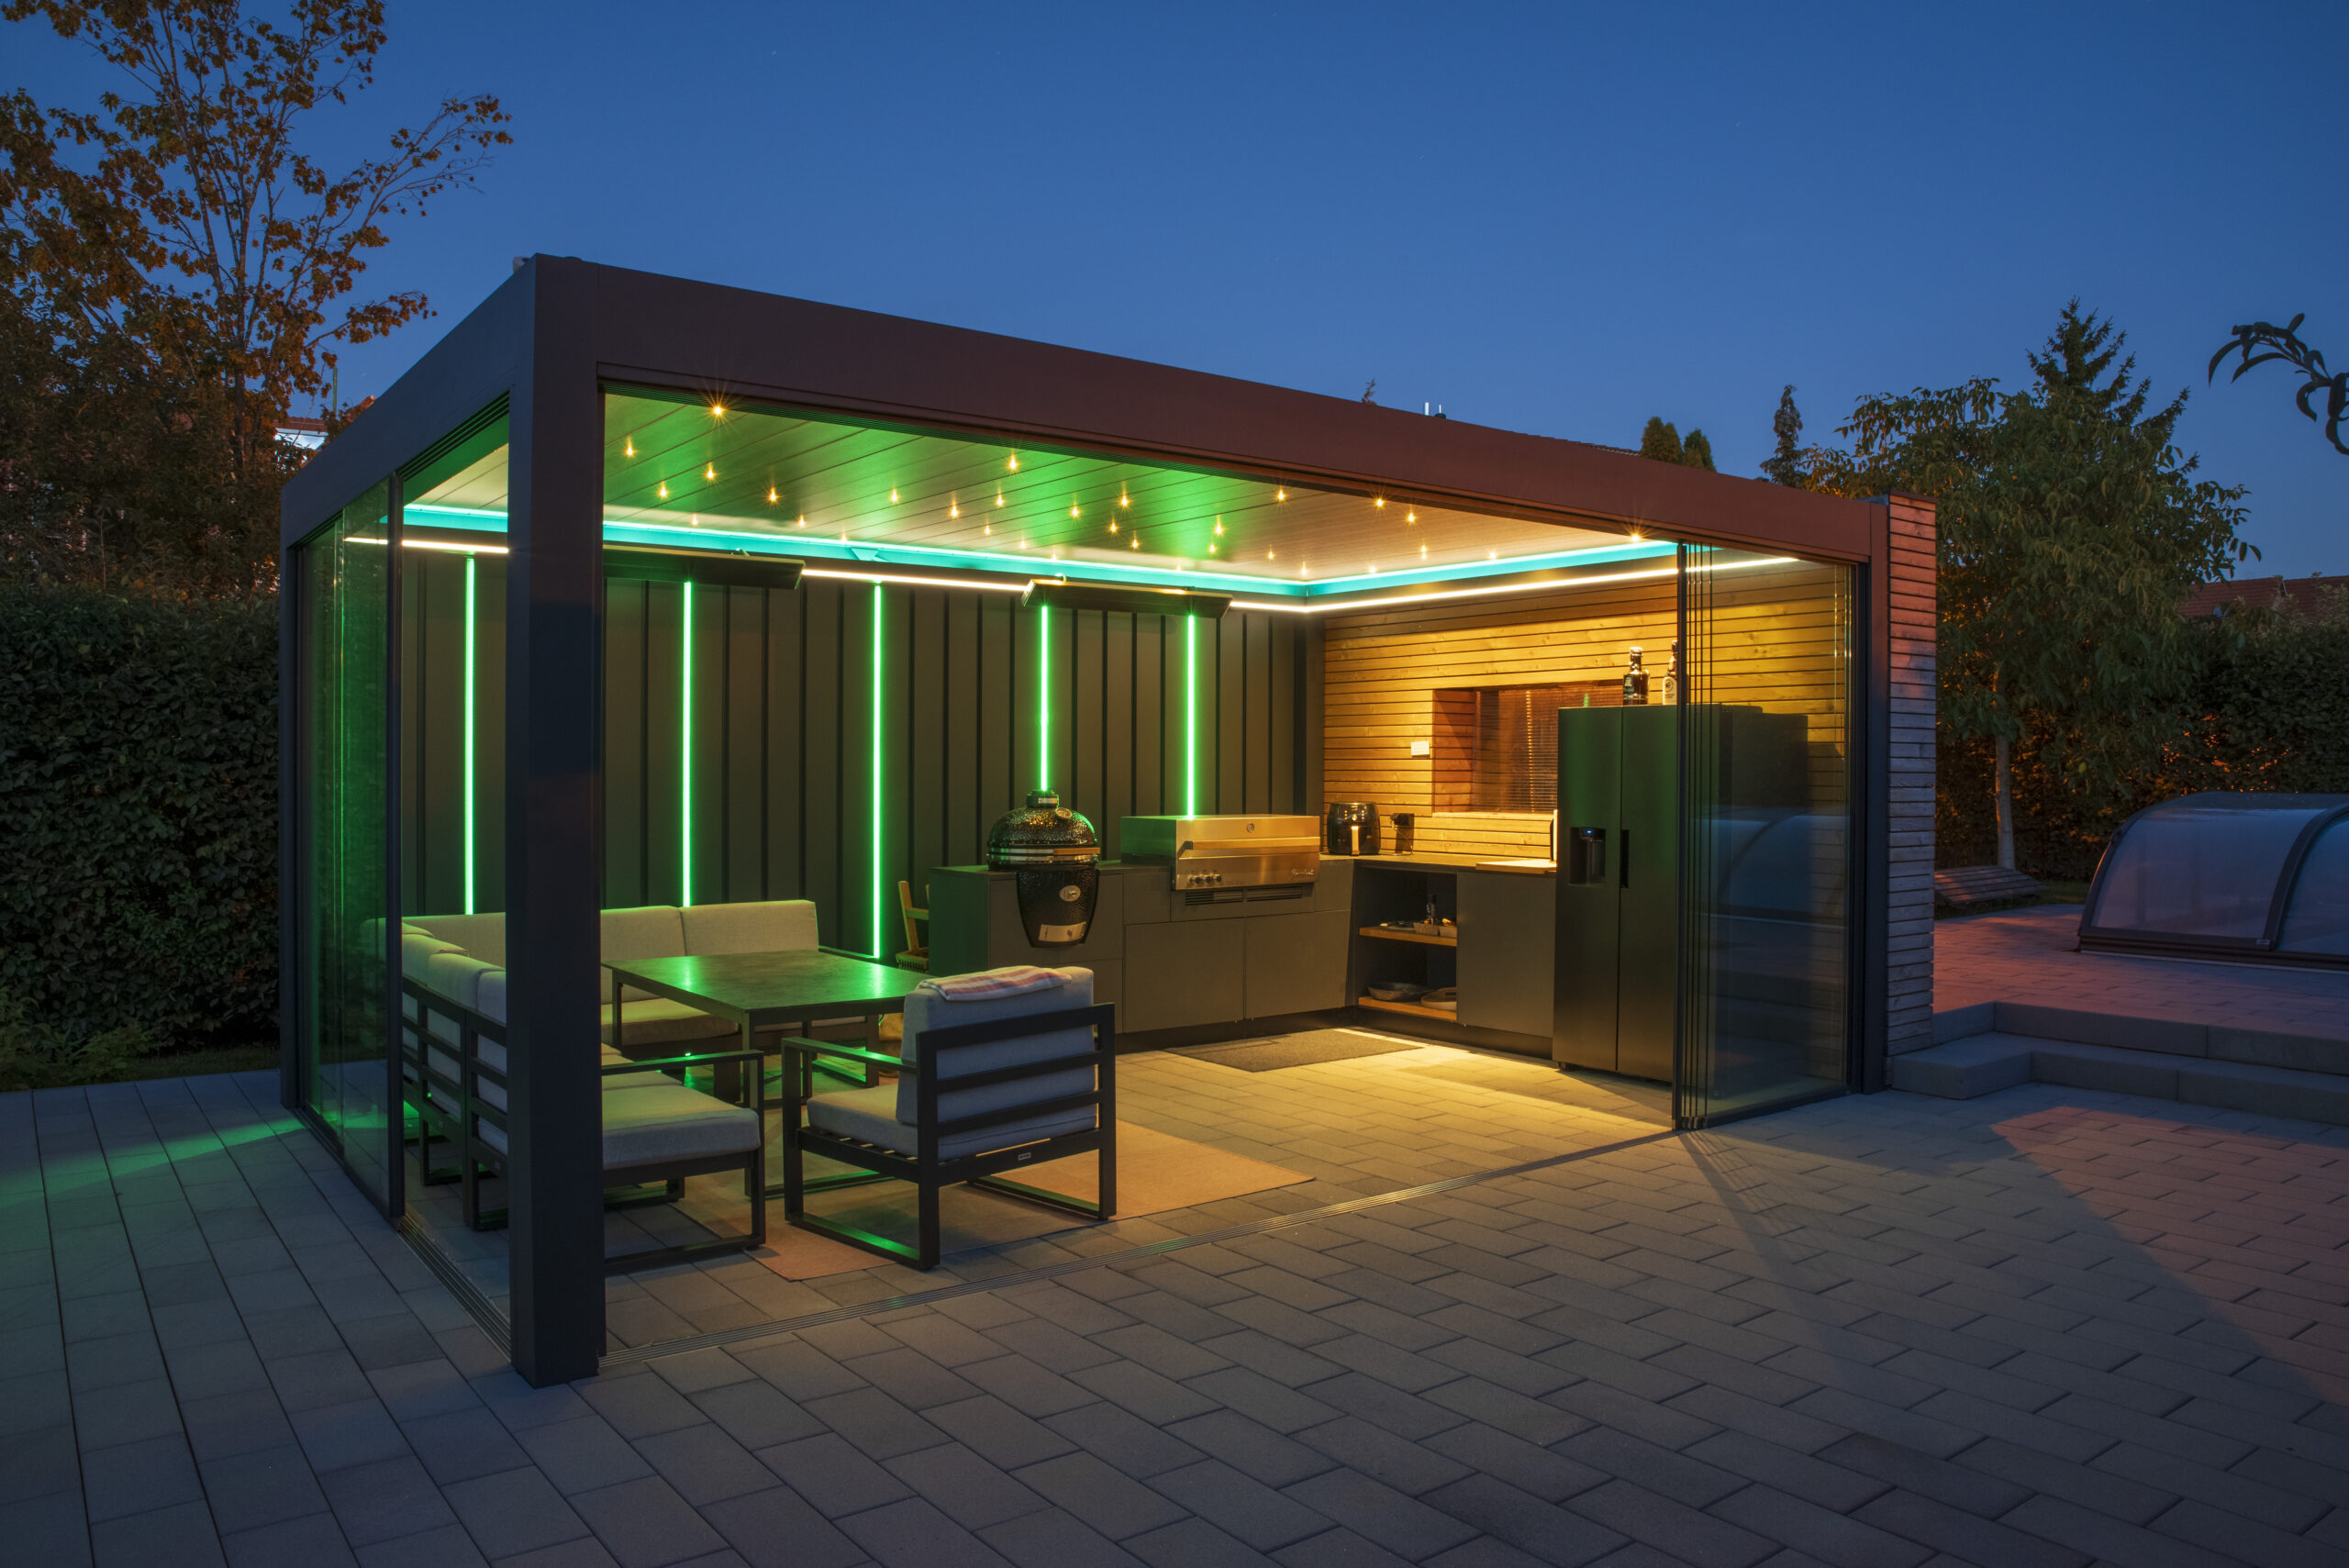 Mit Lamellendach (geschlossen) überdachte Outdoor-Küche mit großem Outdoor-Kühlschrank, Outdoor-Spüle, 2 Grills und Essecke. Grüne und gelbe LEDs sorgen am Abend für stimmungsvolle Beleuchtung.